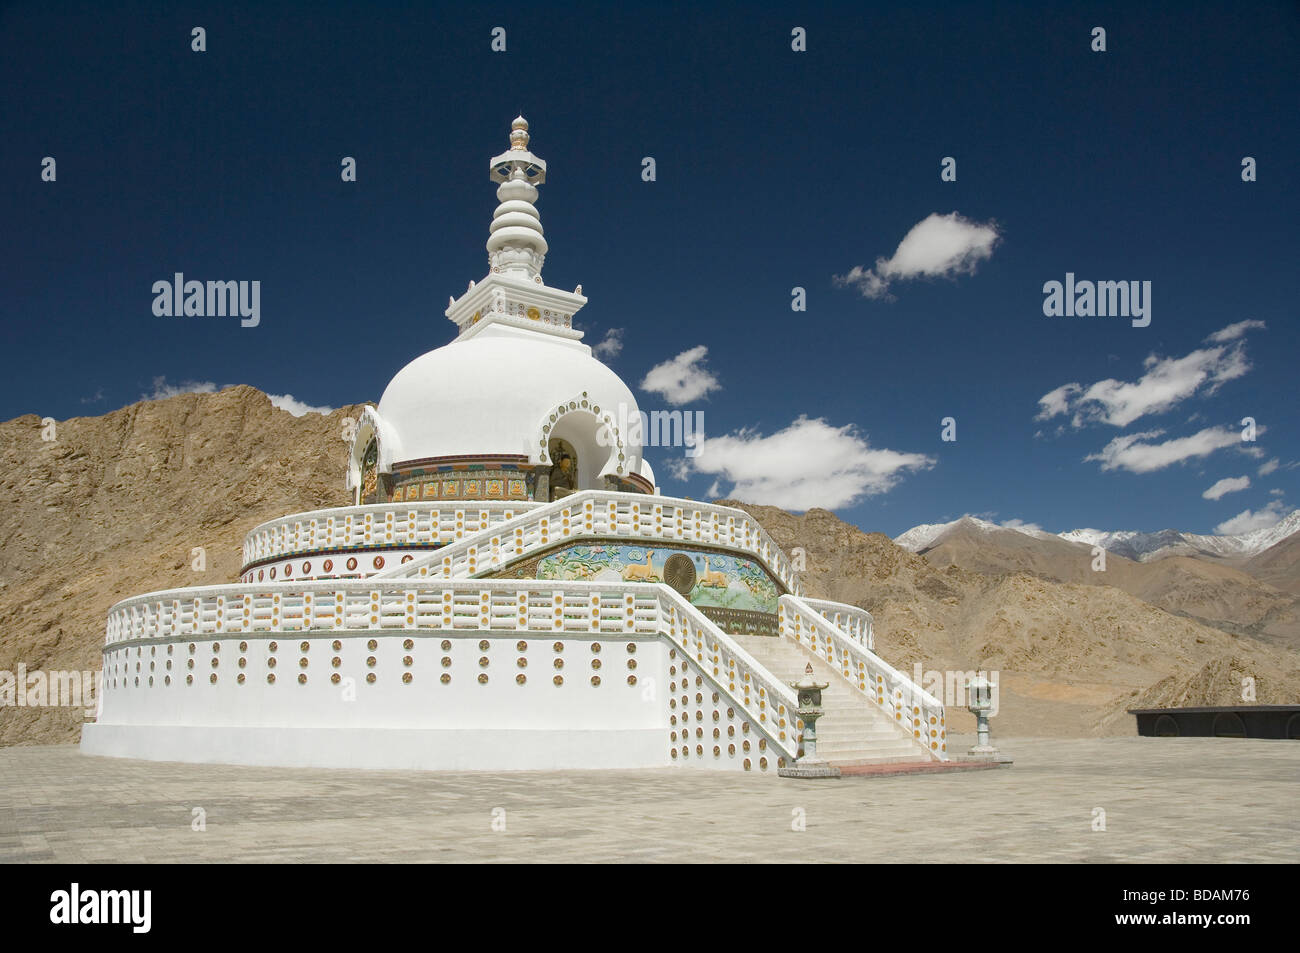 Stupa on a landscape, Shanti Stupa, Leh, Ladakh, Jammu and Kashmir, India Stock Photo